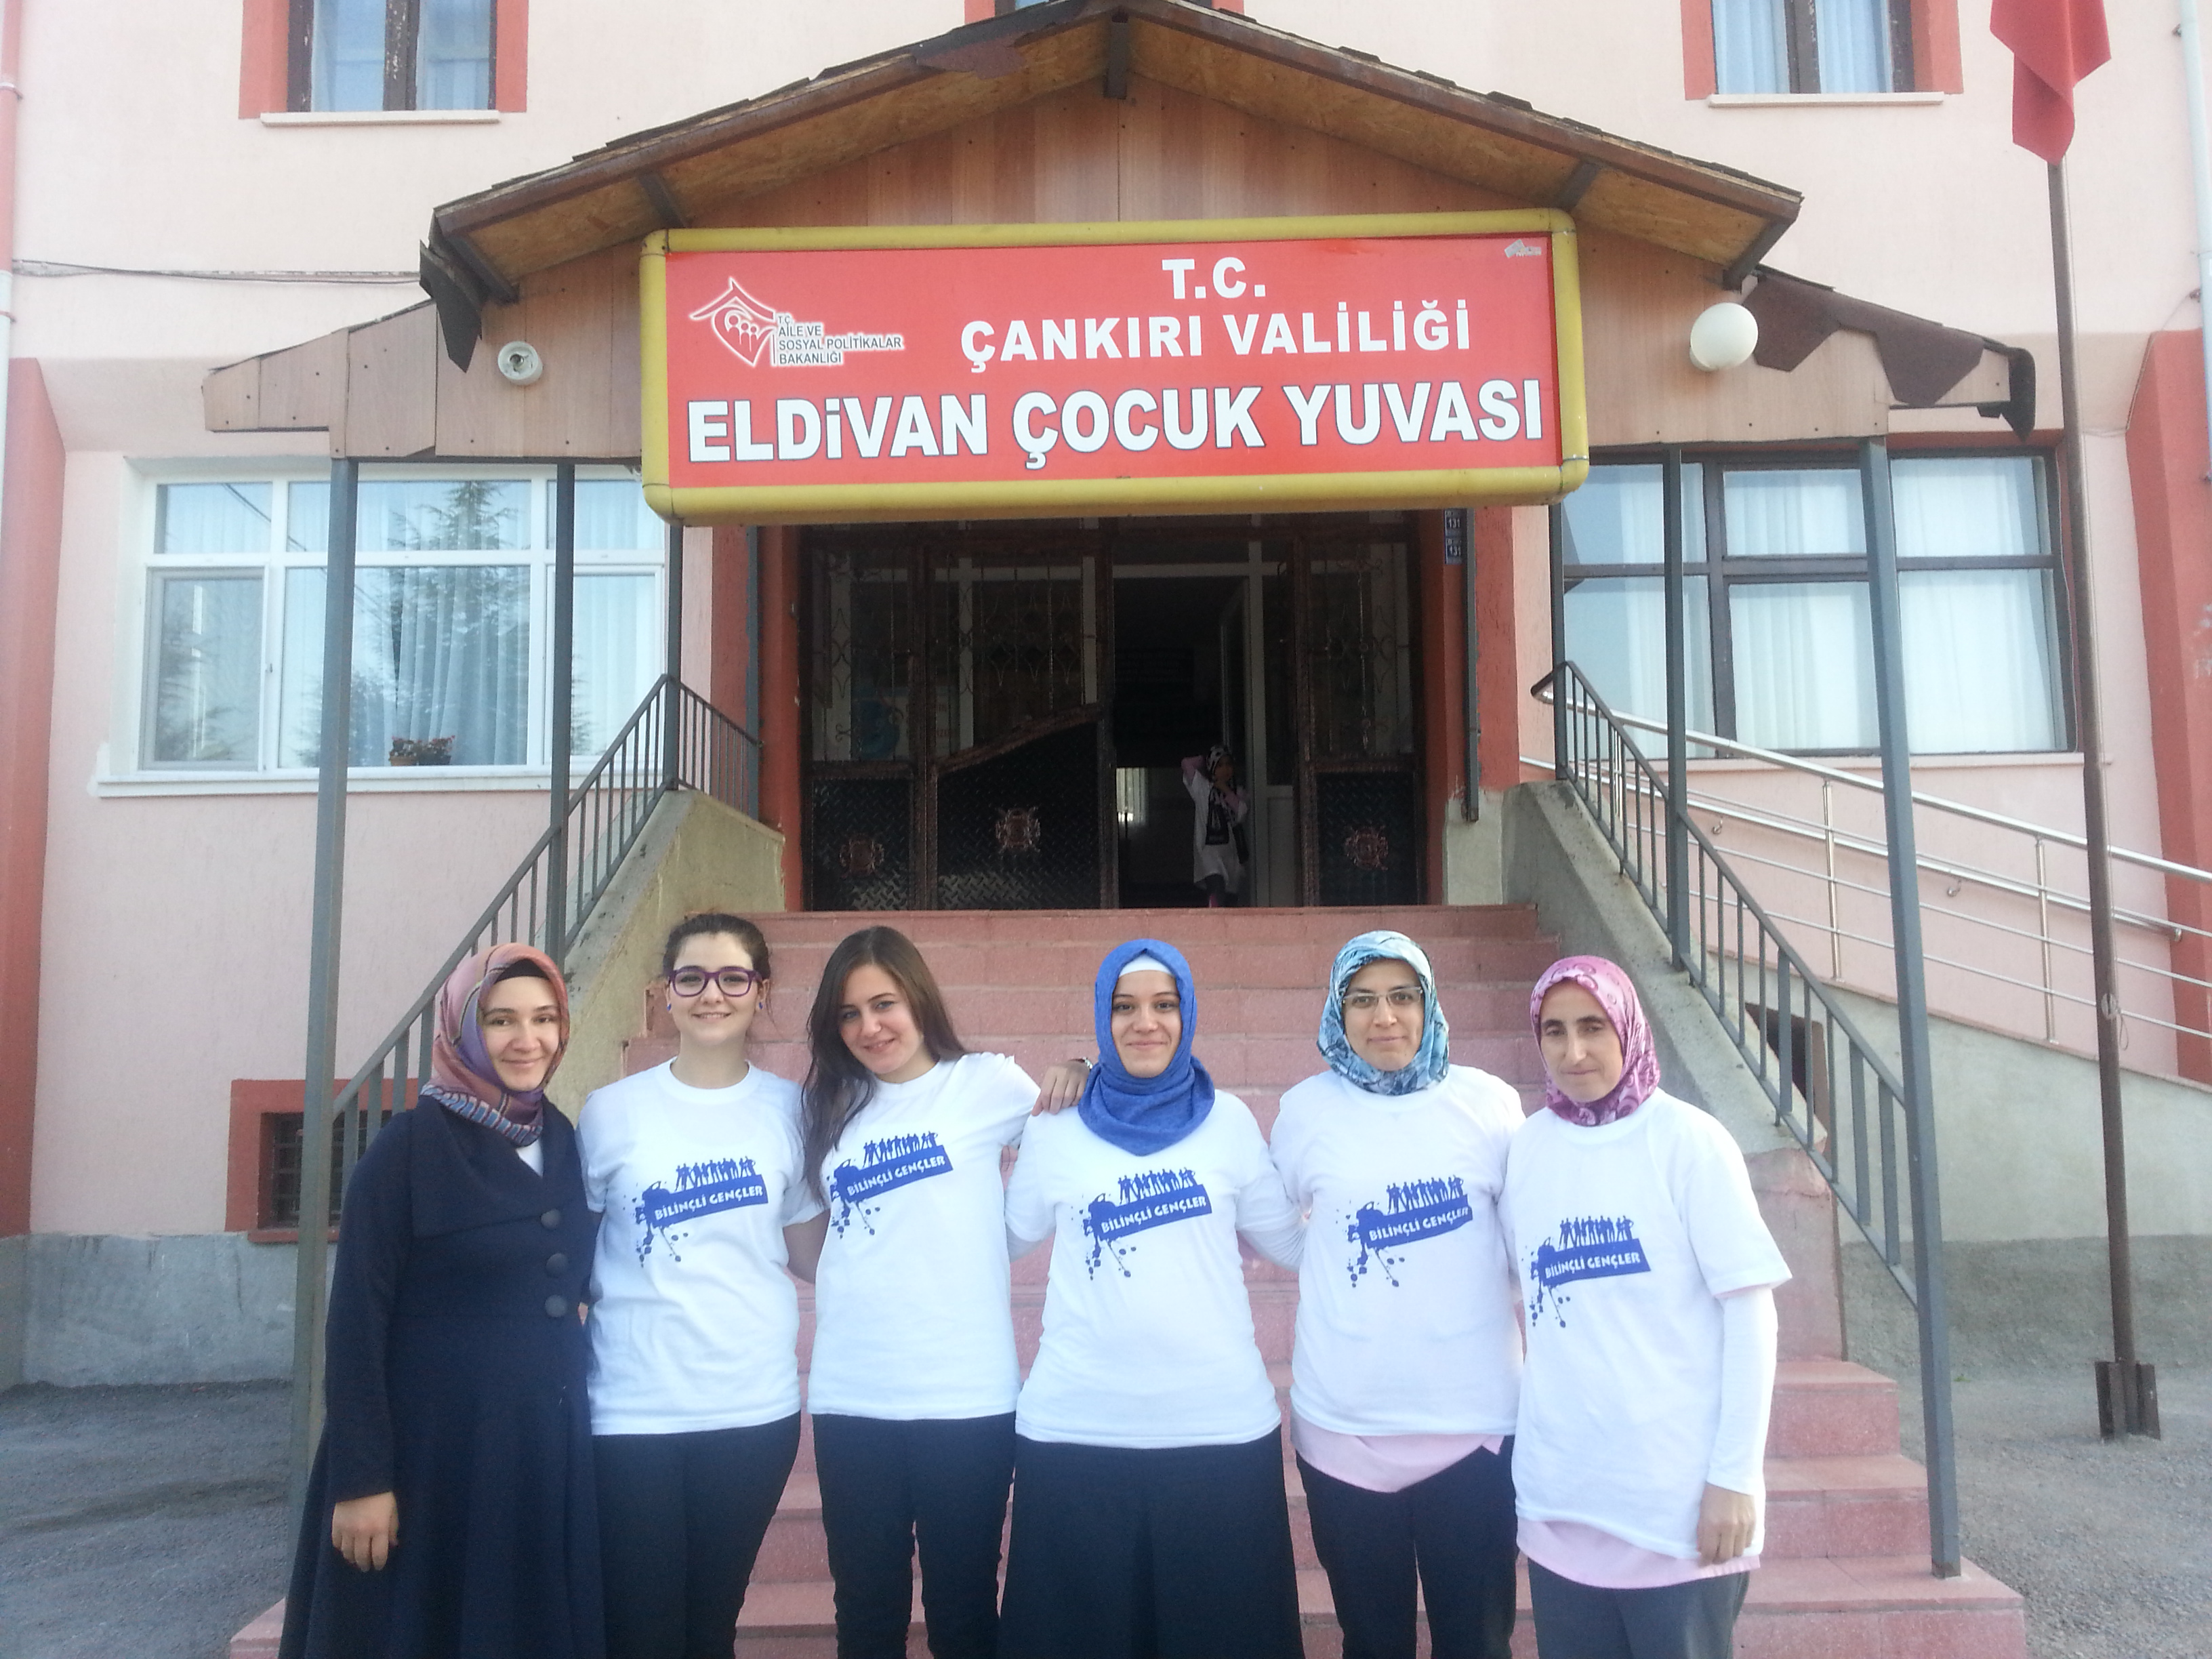 Bilinçli Gençler Derneği - Türkiye Bilinçli Gençlik Projesi - "MİNİK KARDEŞLERİMİZLE SİNEMA VE EĞLENCE" - Çankırı Karatekin Üniversitesi Bilinçli Gençler Topluluğu - ÇANKIRI